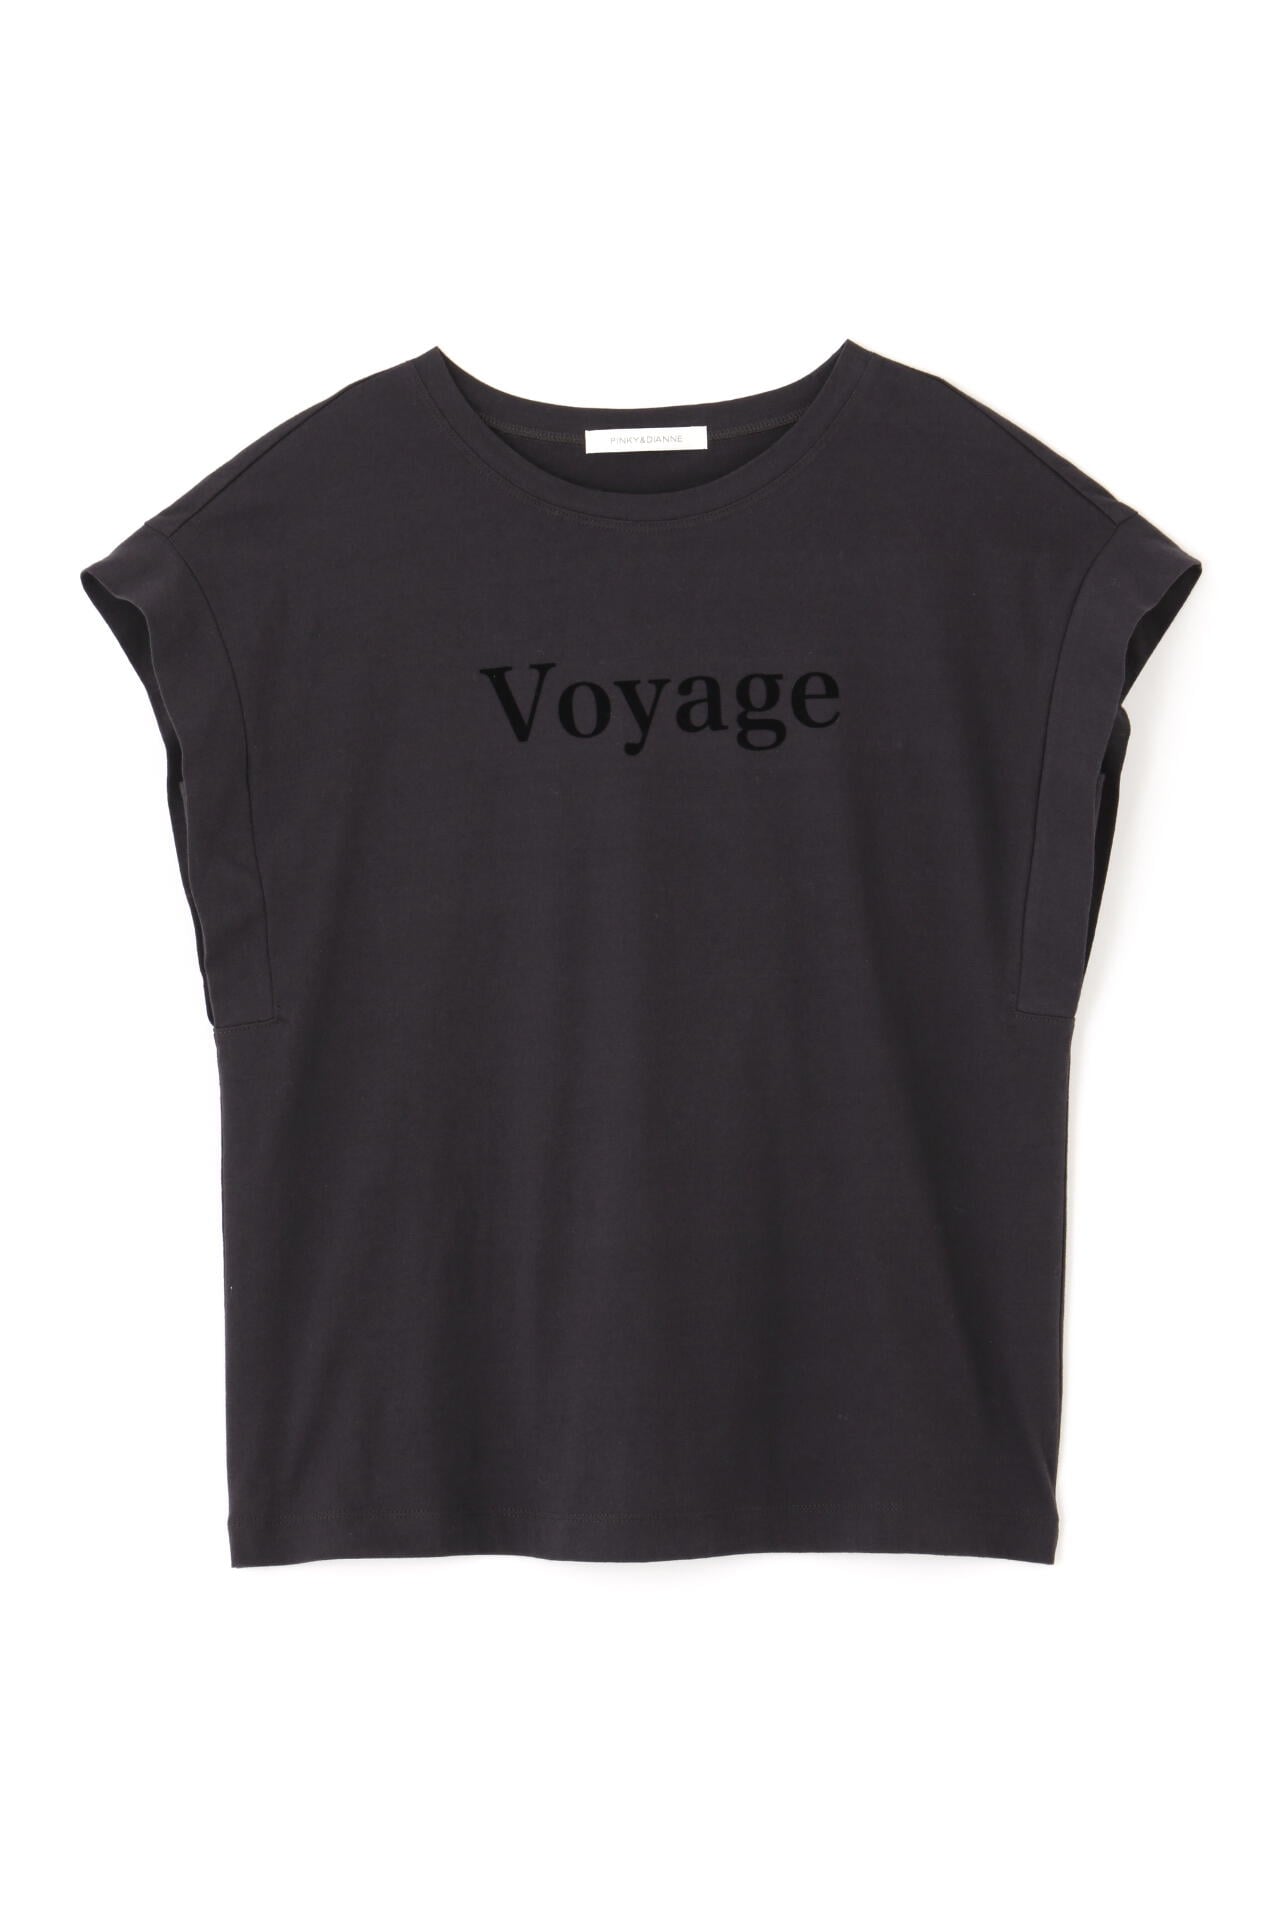 【先行予約 4月中旬-下旬入荷予定】VoyageプリントTシャツ